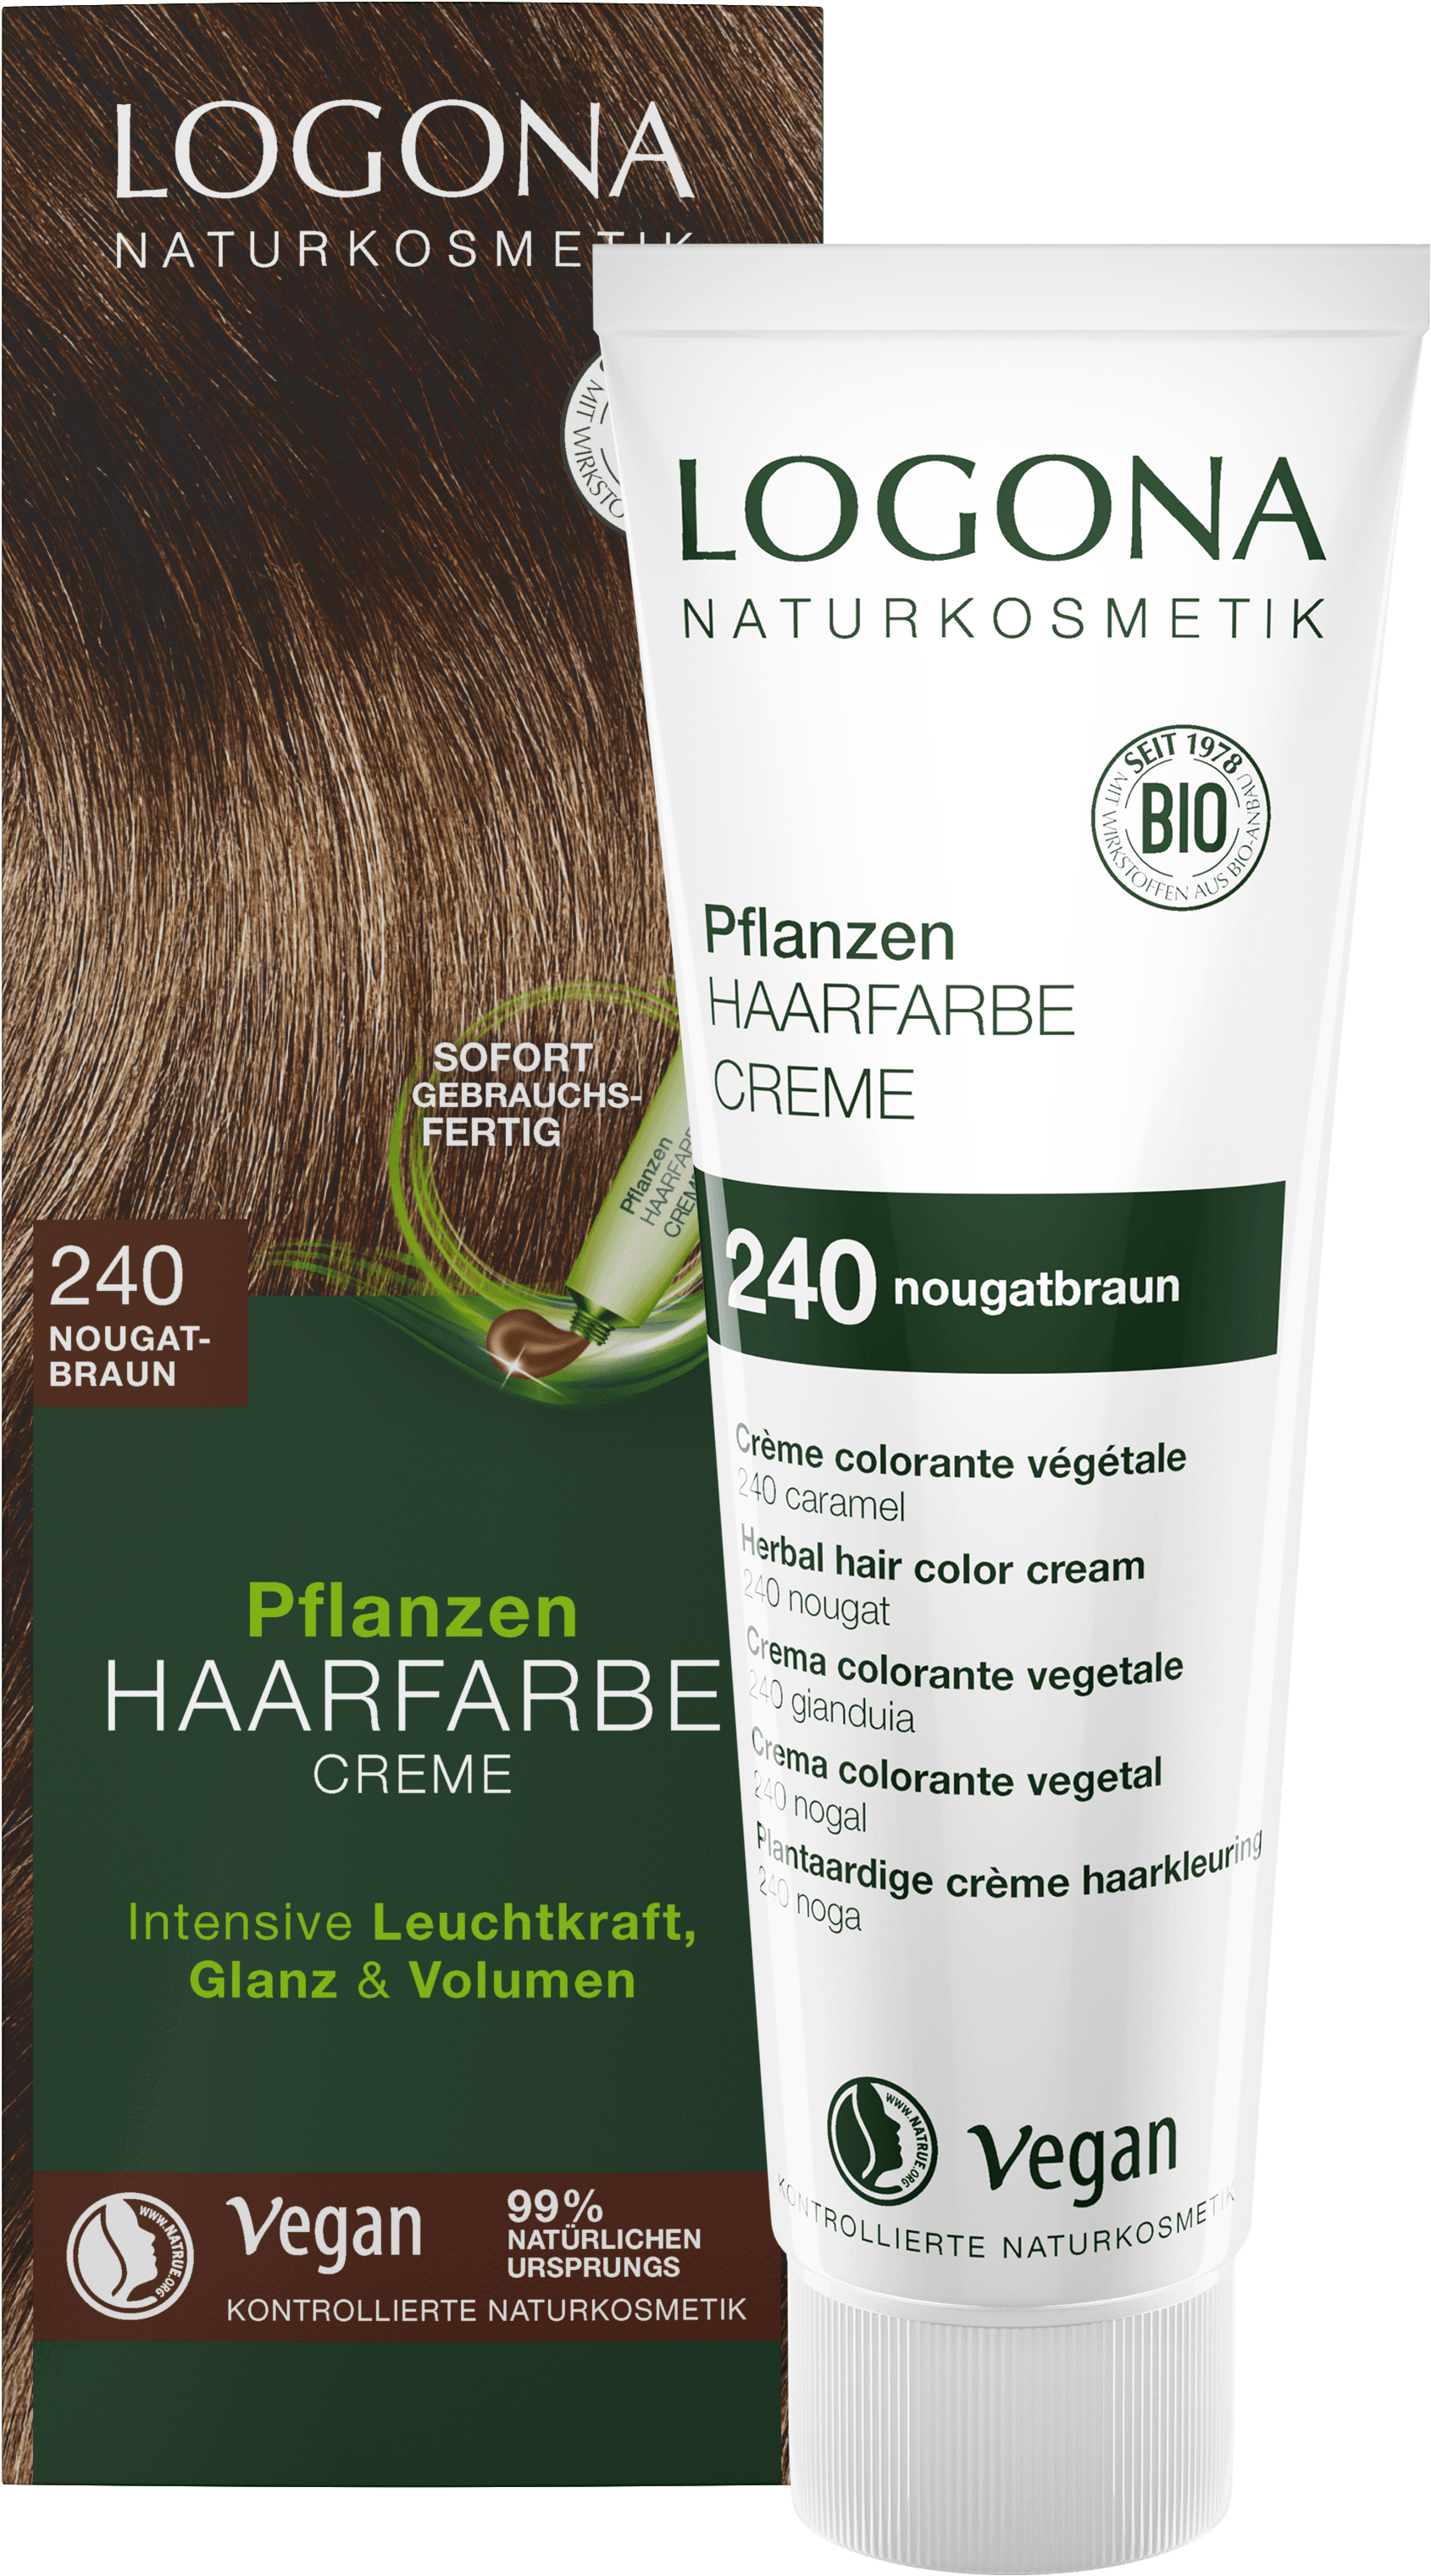 Intrekking Detecteerbaar onder Pflanzen-Haarfarbe Creme 240 Nougatbraun | LOGONA Naturkosmetik